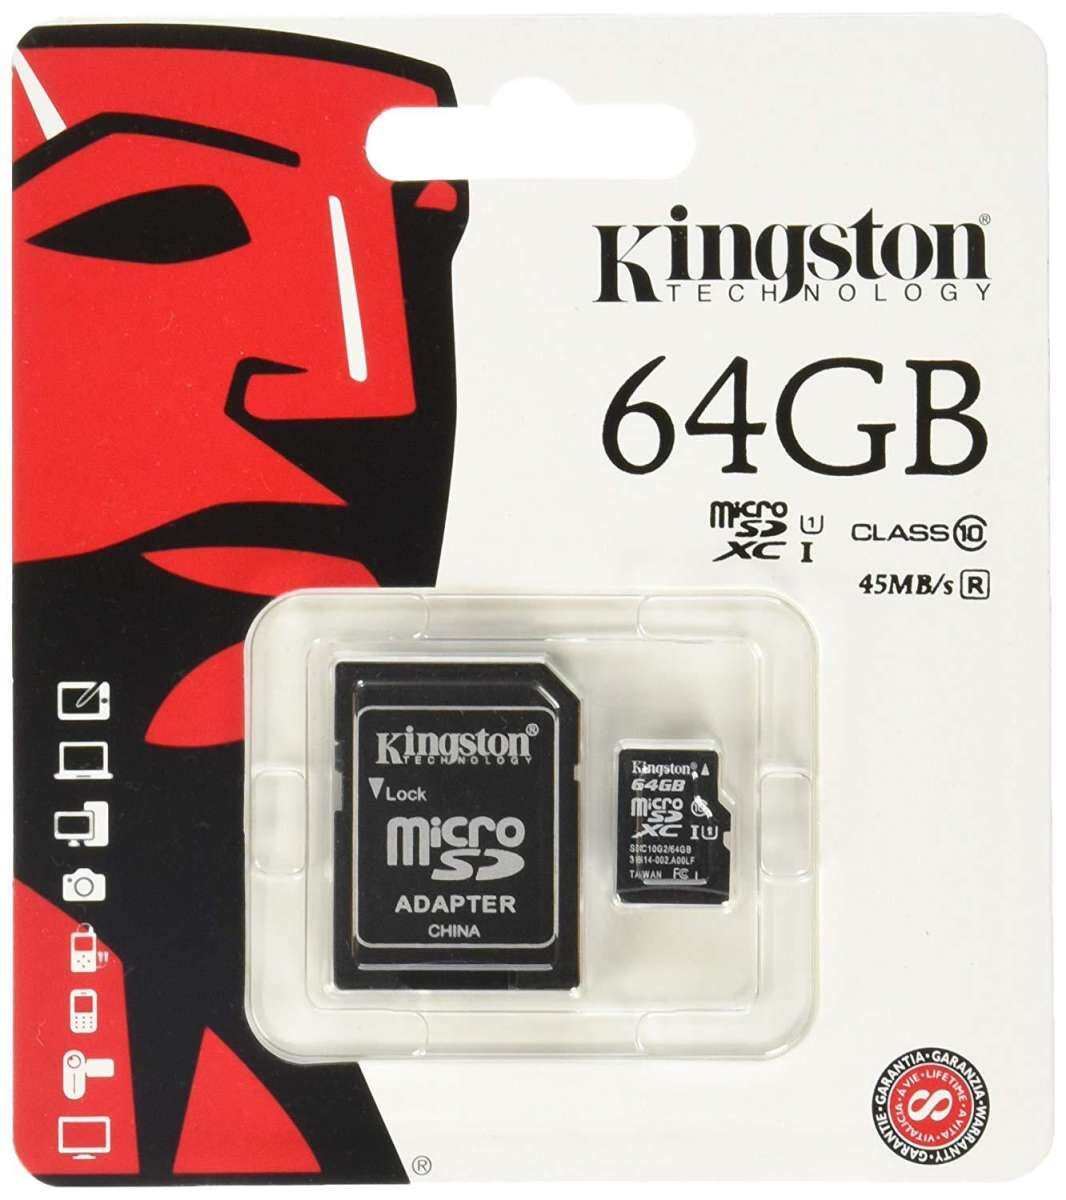 รับประกันหนึ่งปี (ของแท้) Kingston เมมโมรี่การ์ด 64GB SDHC/SDXC Class 10 UHS-I Micro SD Card with Adapter